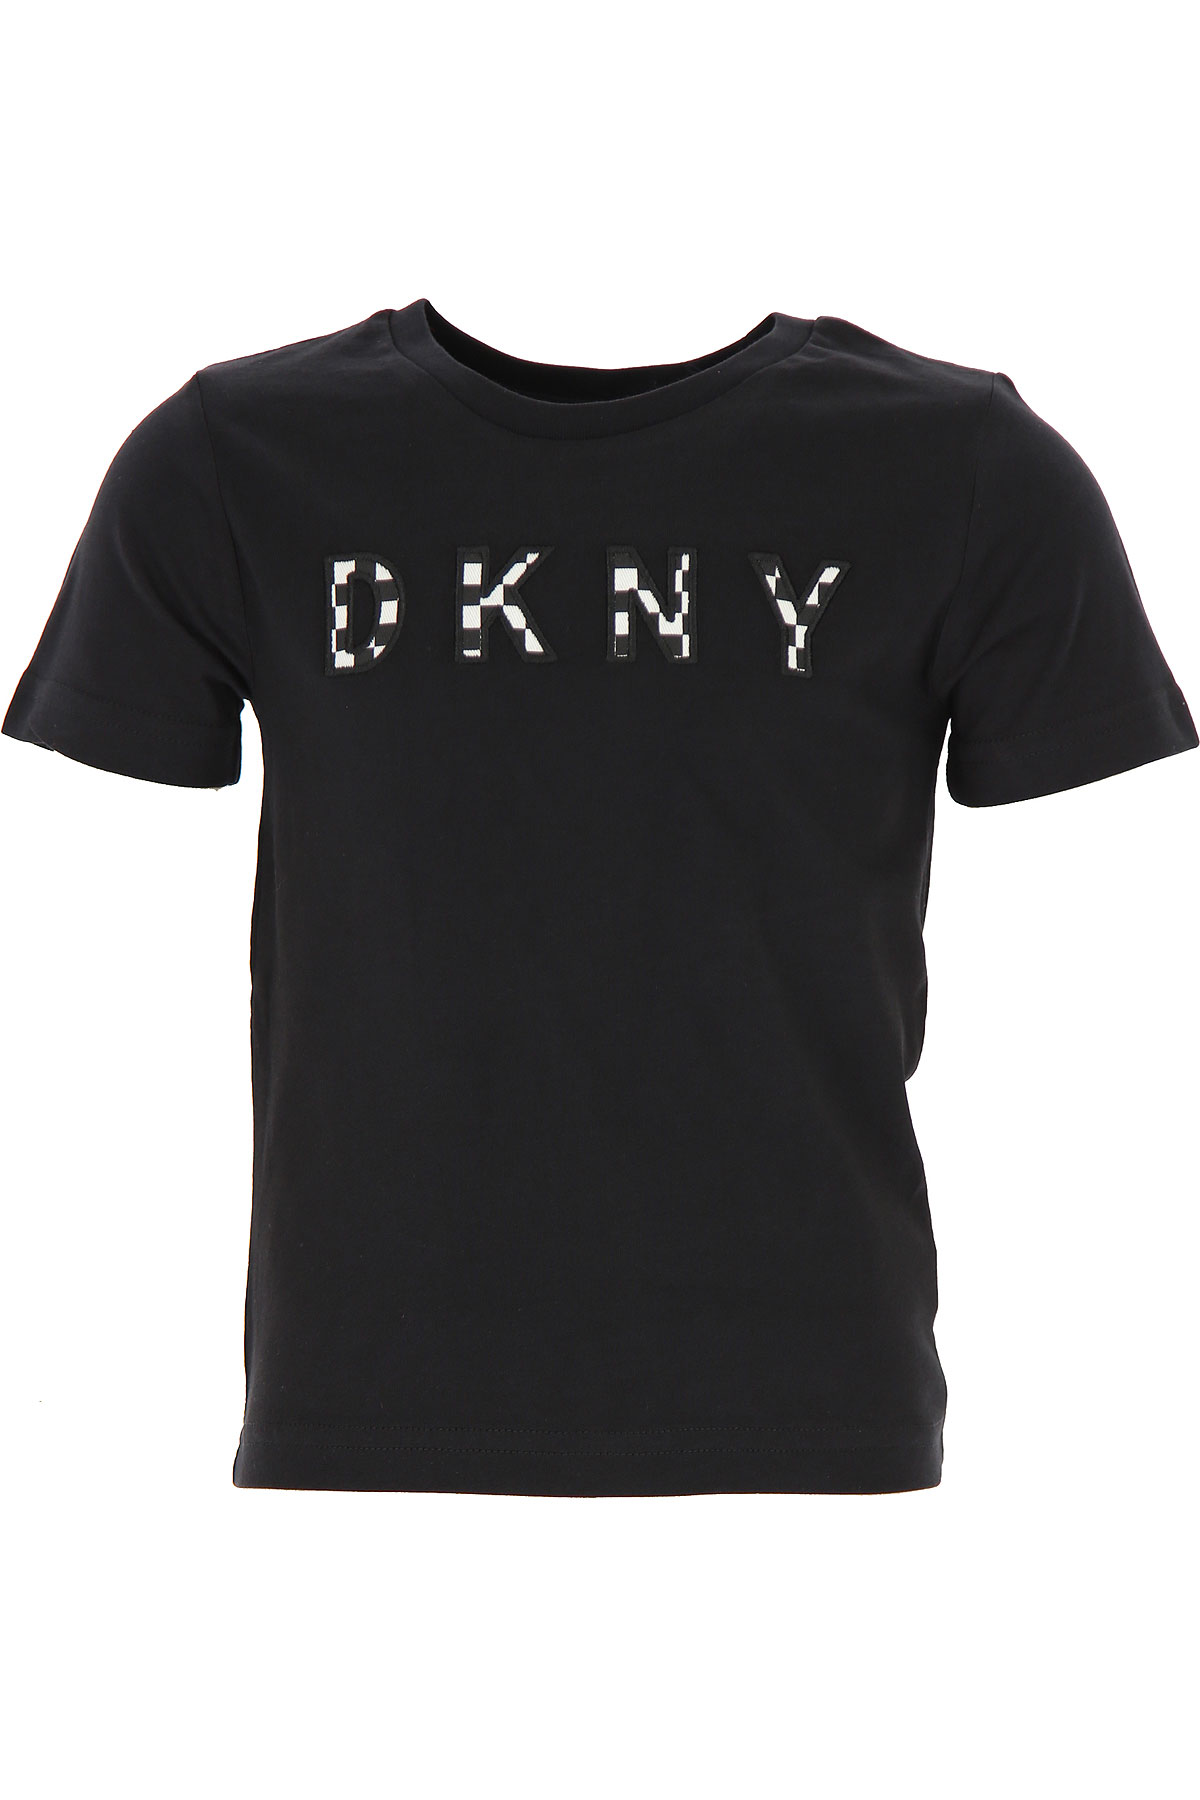 DKNY Kinder T-Shirt für Mädchen Günstig im Sale, Schwarz, Baumwolle, 2017, 4Y 6Y 8Y